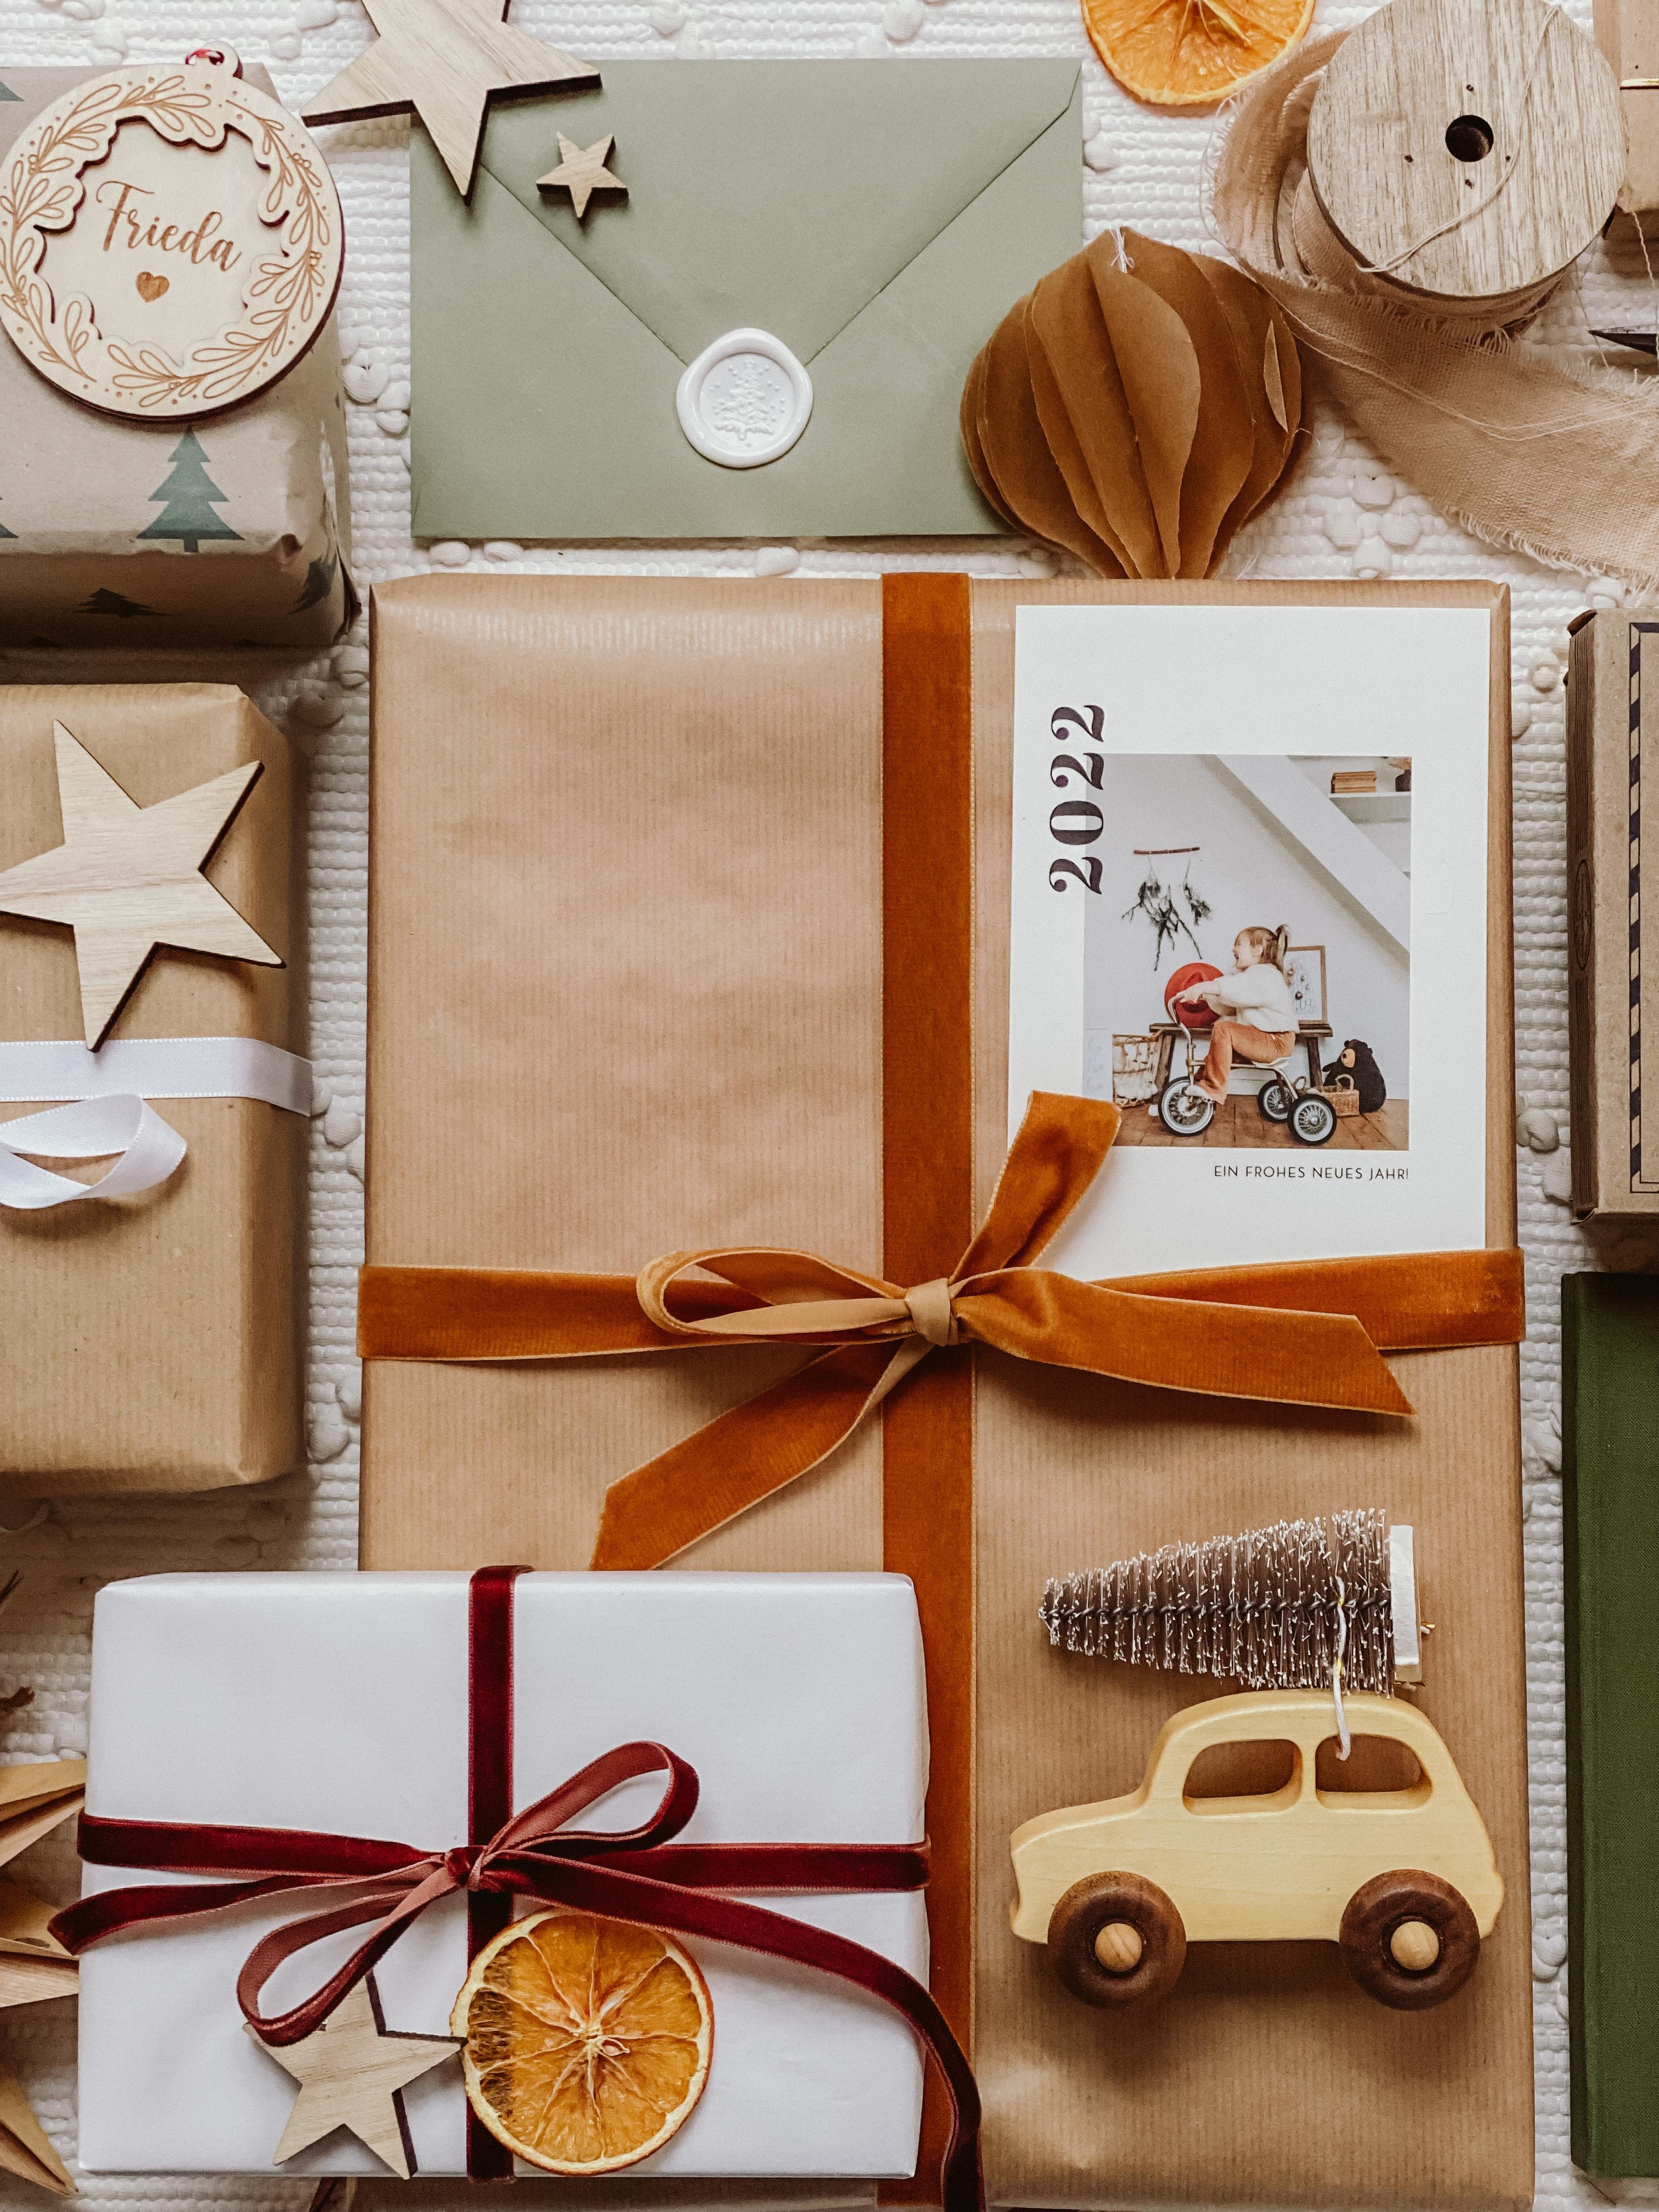 #geschenke #weihnachtsgeschenke #presents #weihnachten #weihnachtszeit #weihnachtsdeko #weihnachtsdekoartion 